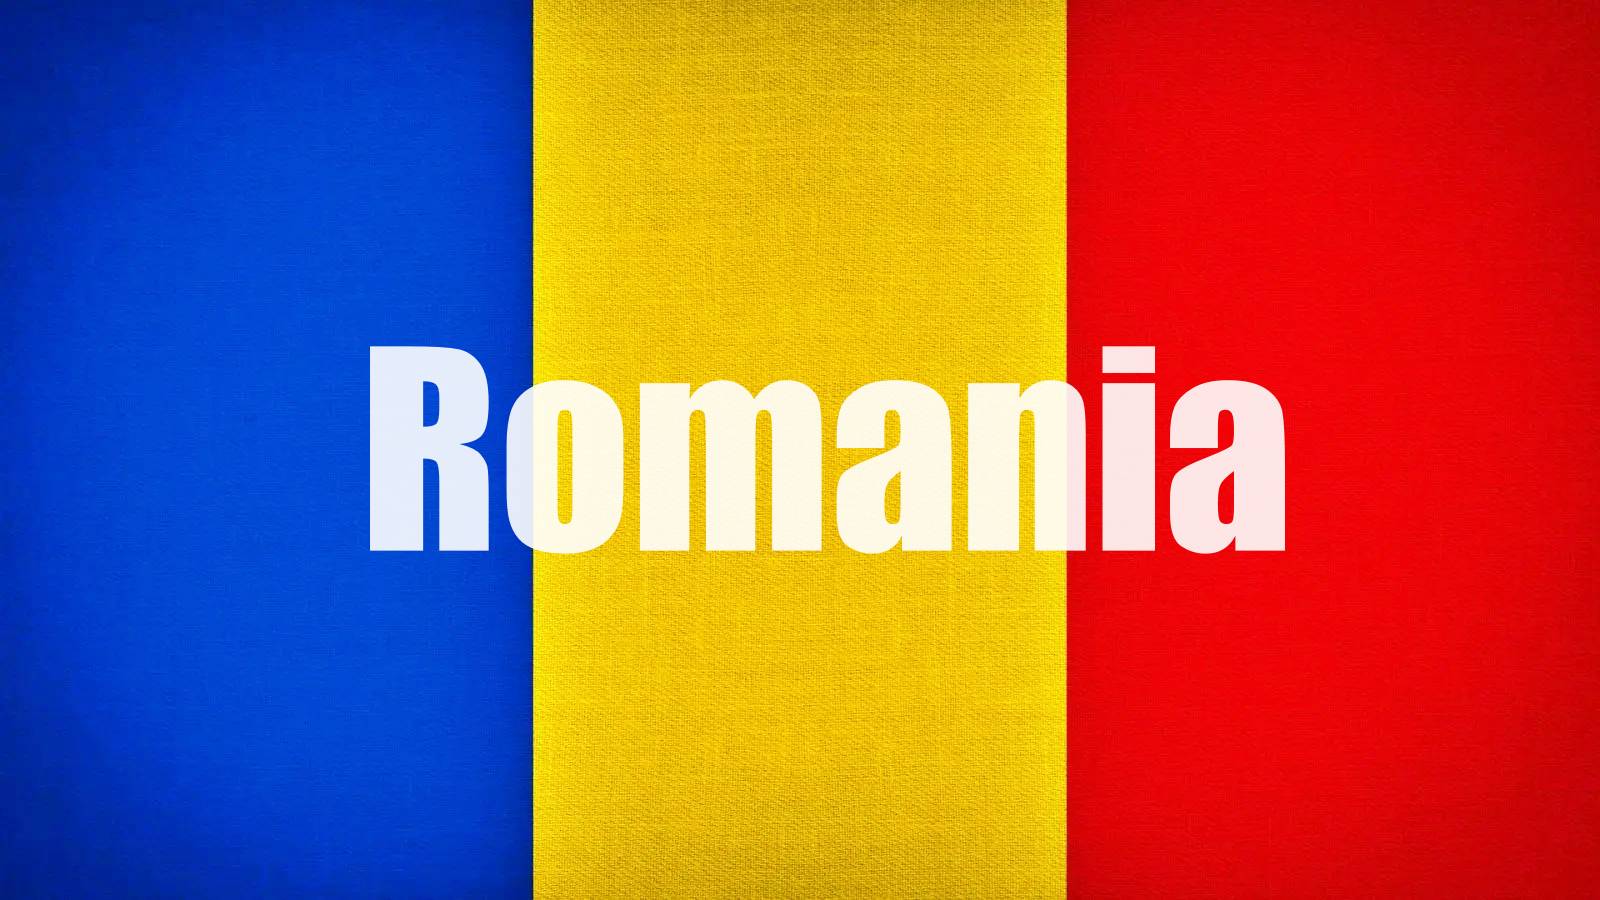 Oficjalny komunikat Ministerstwa Środowiska OSTATNI WAŻNY MOMENT Wszyscy Rumuni